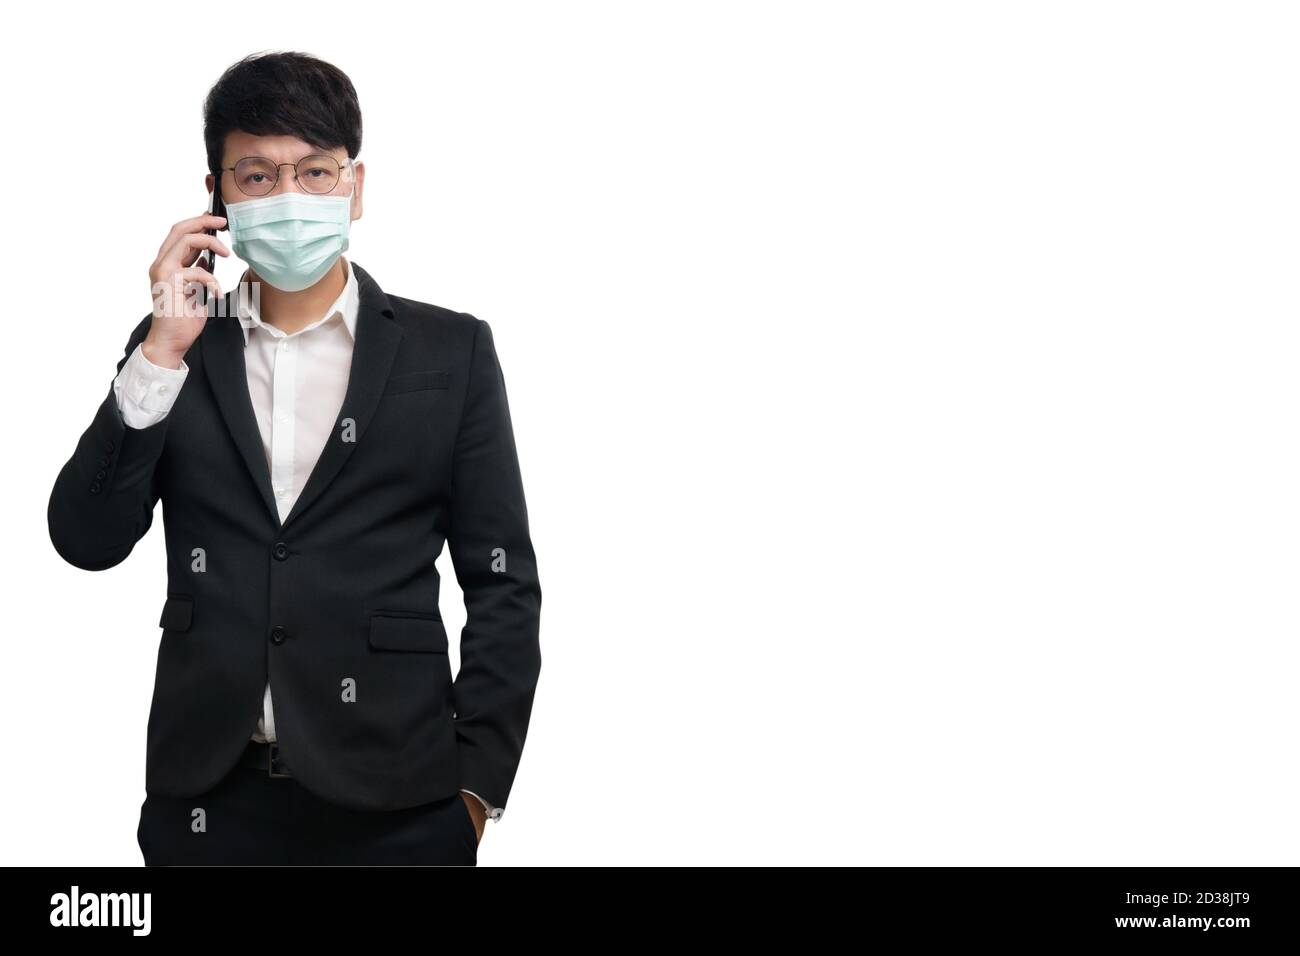 Asiatische Geschäftsmann tragen chirurgische Gesichtsmaske in formellen schwarzen Anzug Jacke, mit Smartphone zu sprechen von der rechten Hand, Blick auf die Kamera, Studio Licht Stockfoto